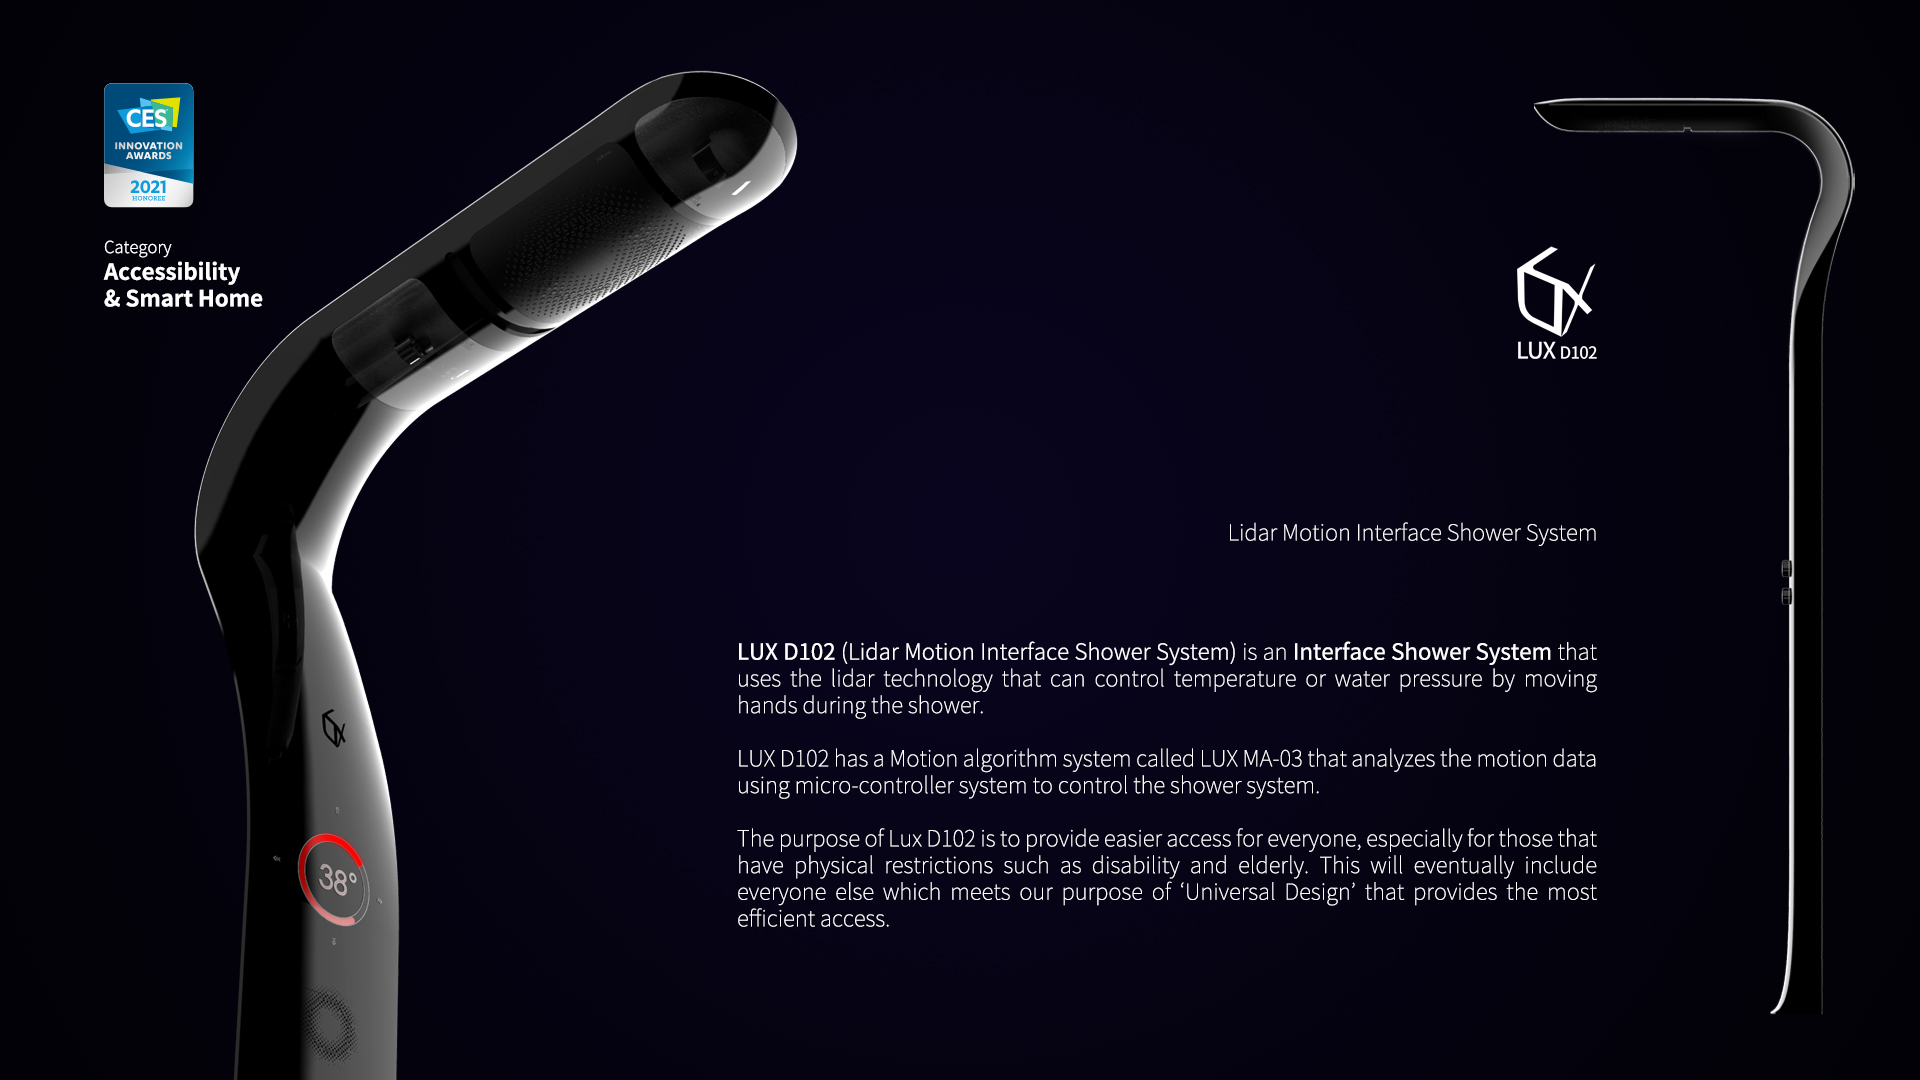 CES 2021 Las Vegas – LUX D102 (Lidar-Motion Interface Shower System) & Neck Care